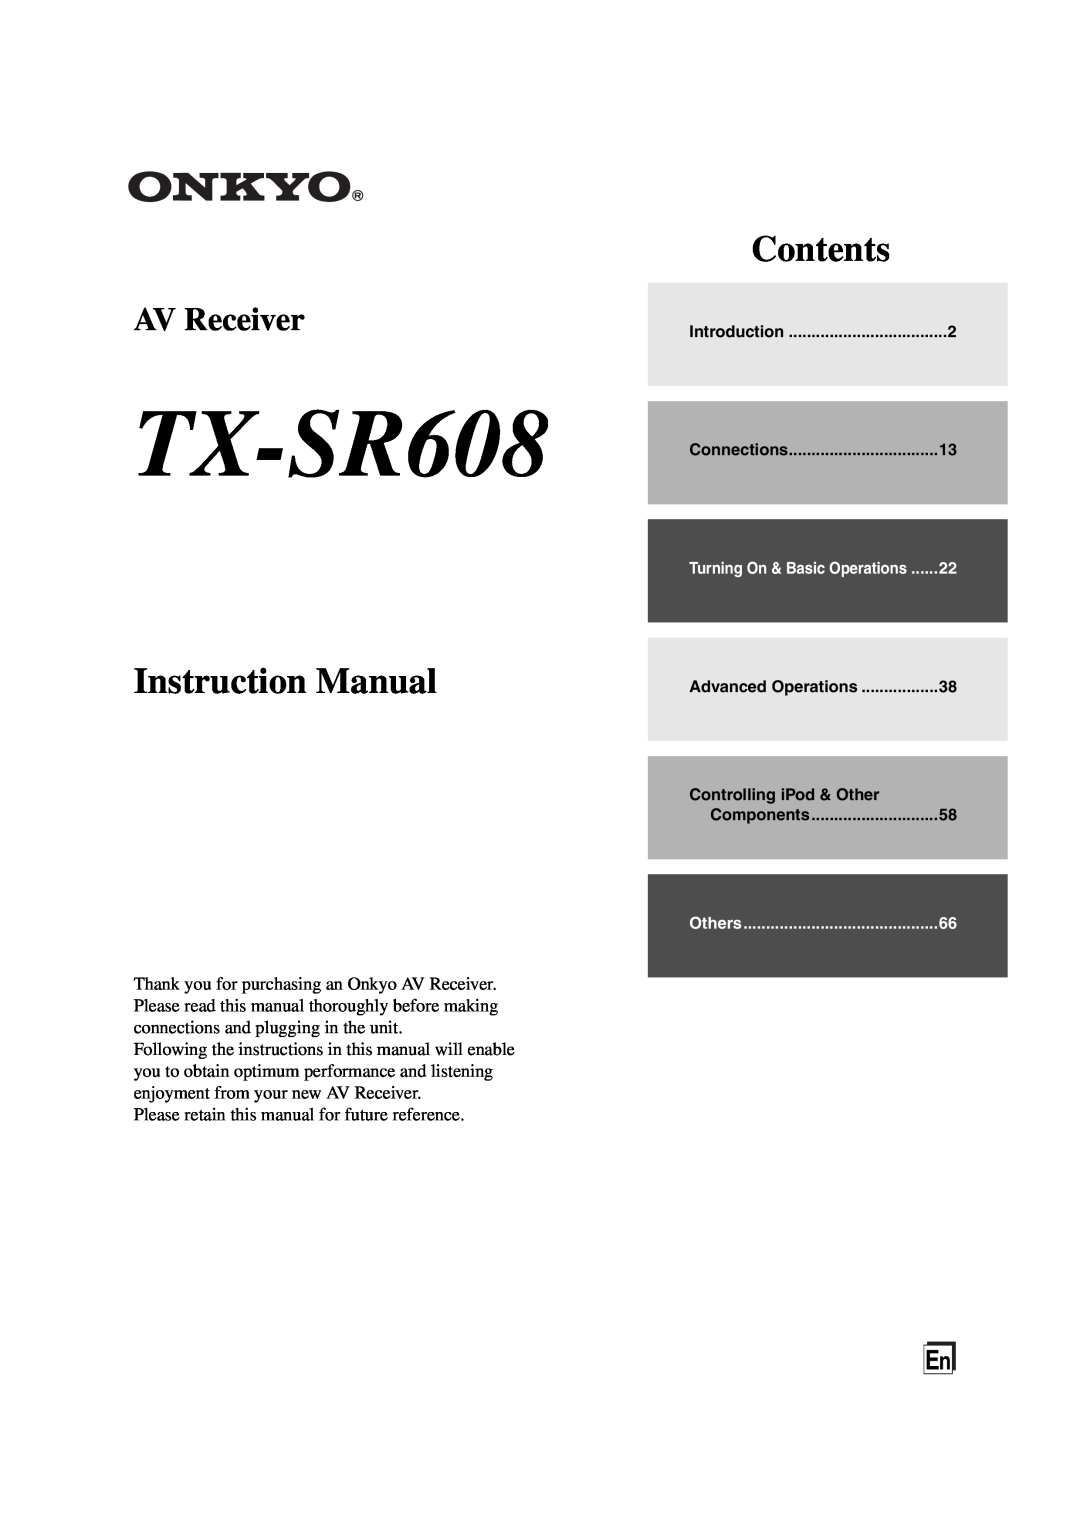 Onkyo instruction manual TX-SR608, Instruction Manual, Contents, AV Receiver 